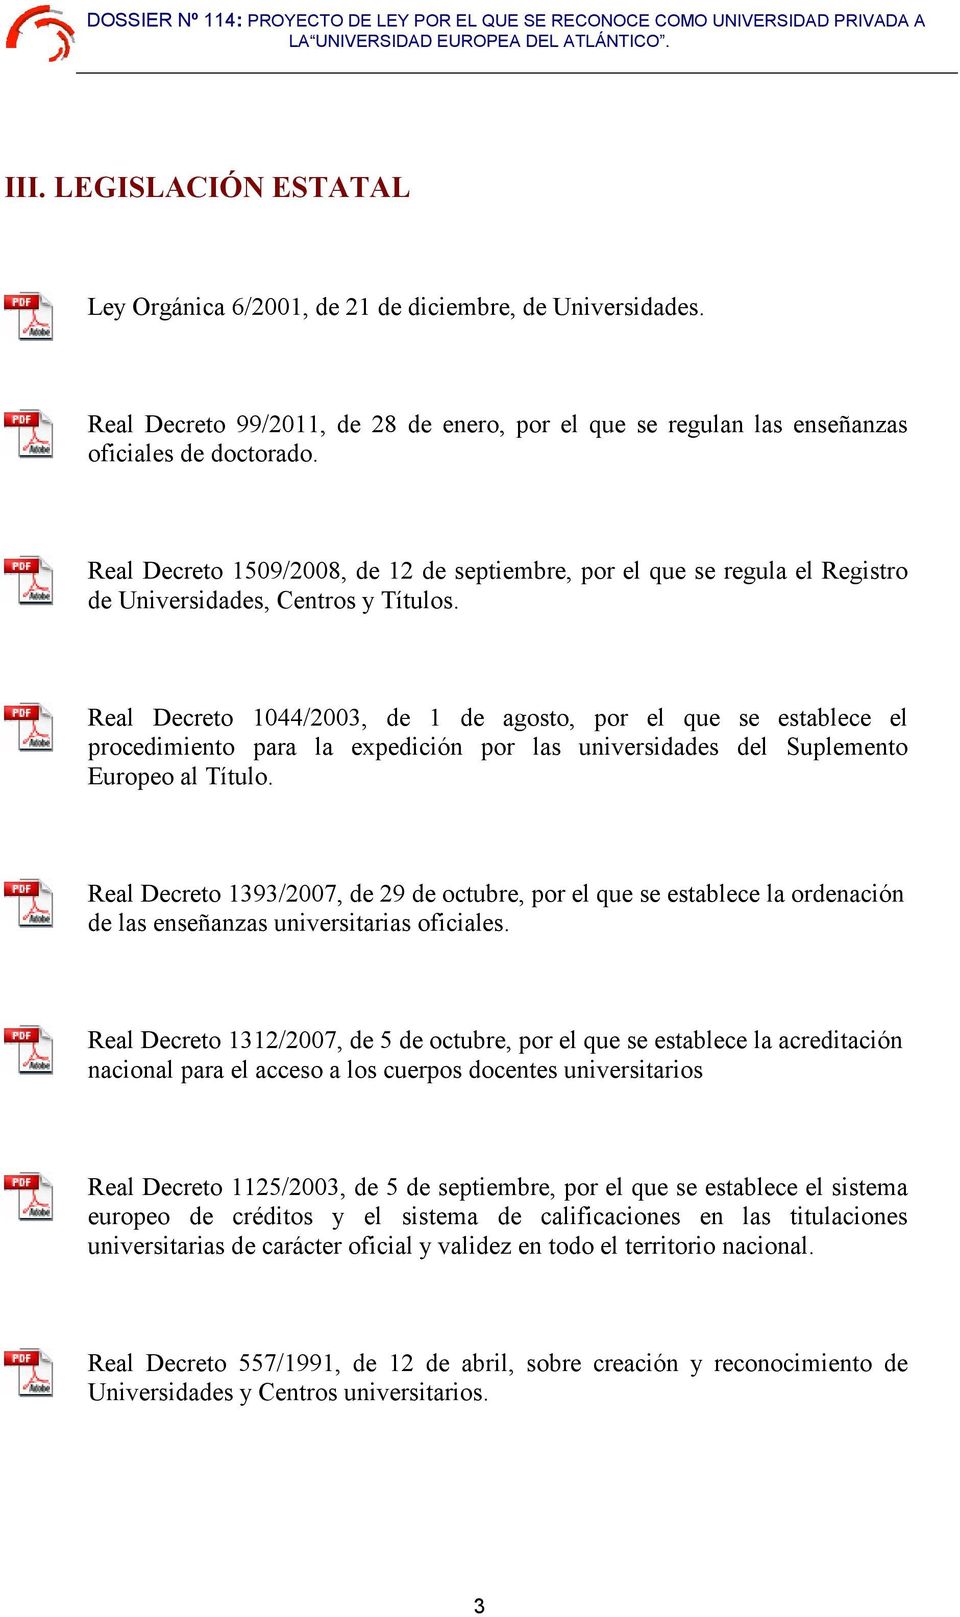 Real Decreto 1044/2003, de 1 de agosto, por el que se establece el procedimiento para la expedición por las universidades del Suplemento Europeo al Título.